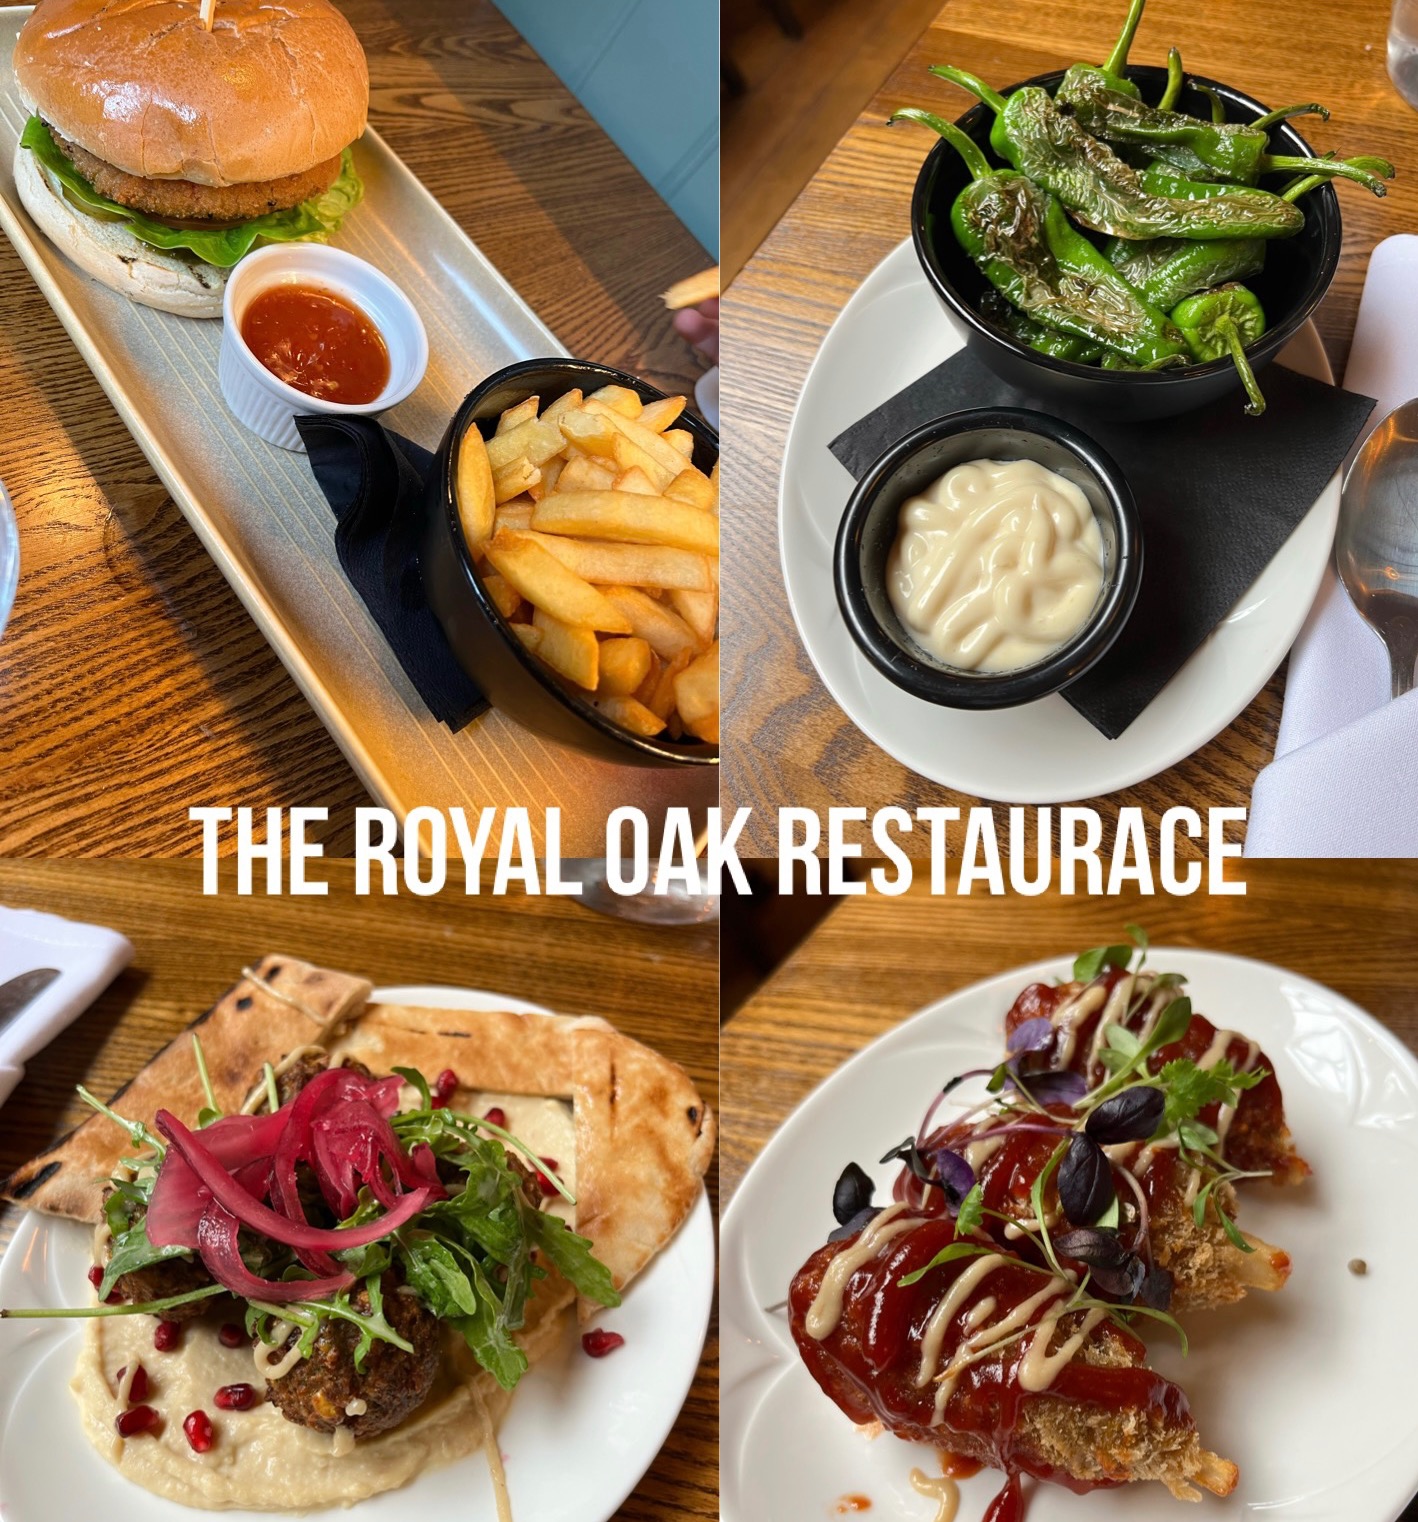 The Royal oak vegan food